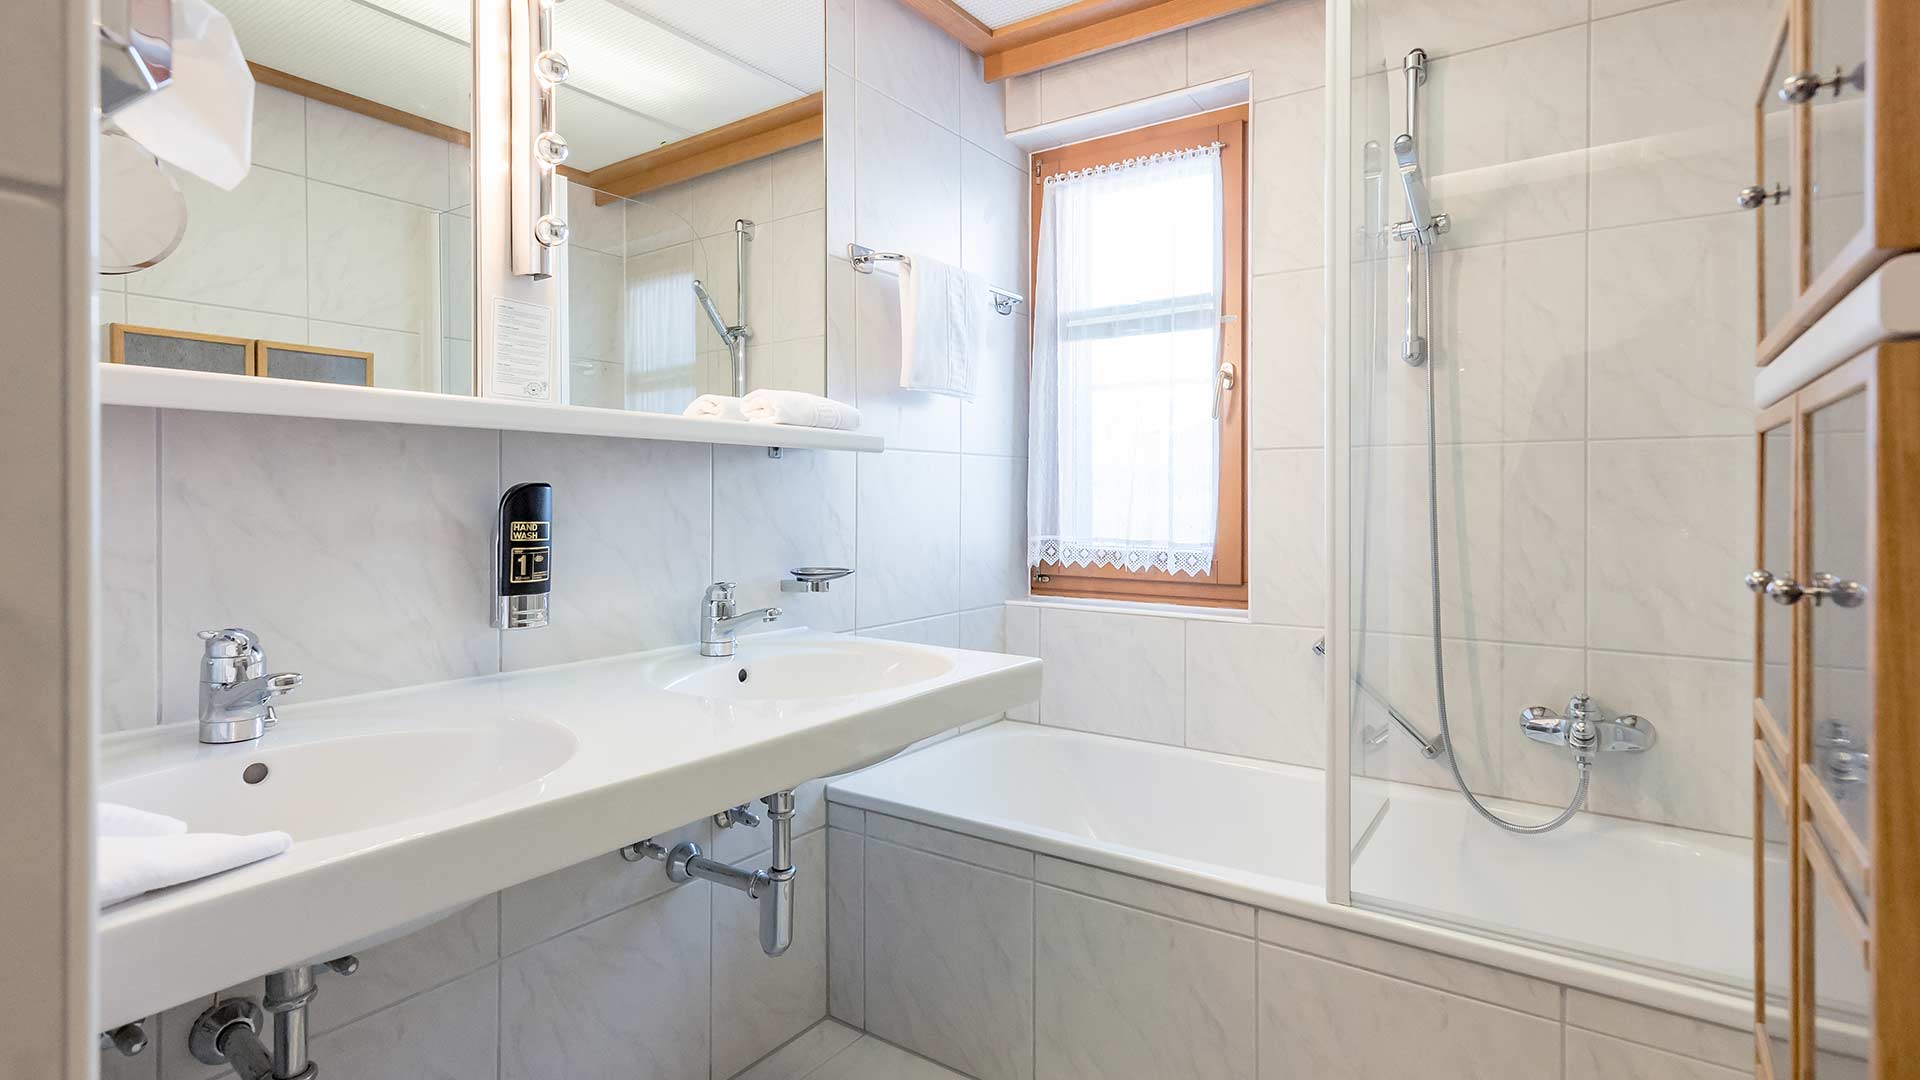 Geräumiges Badezimmer mit viel Ablagefläche, Badewanne, Dusche und Doppelwaschbecken